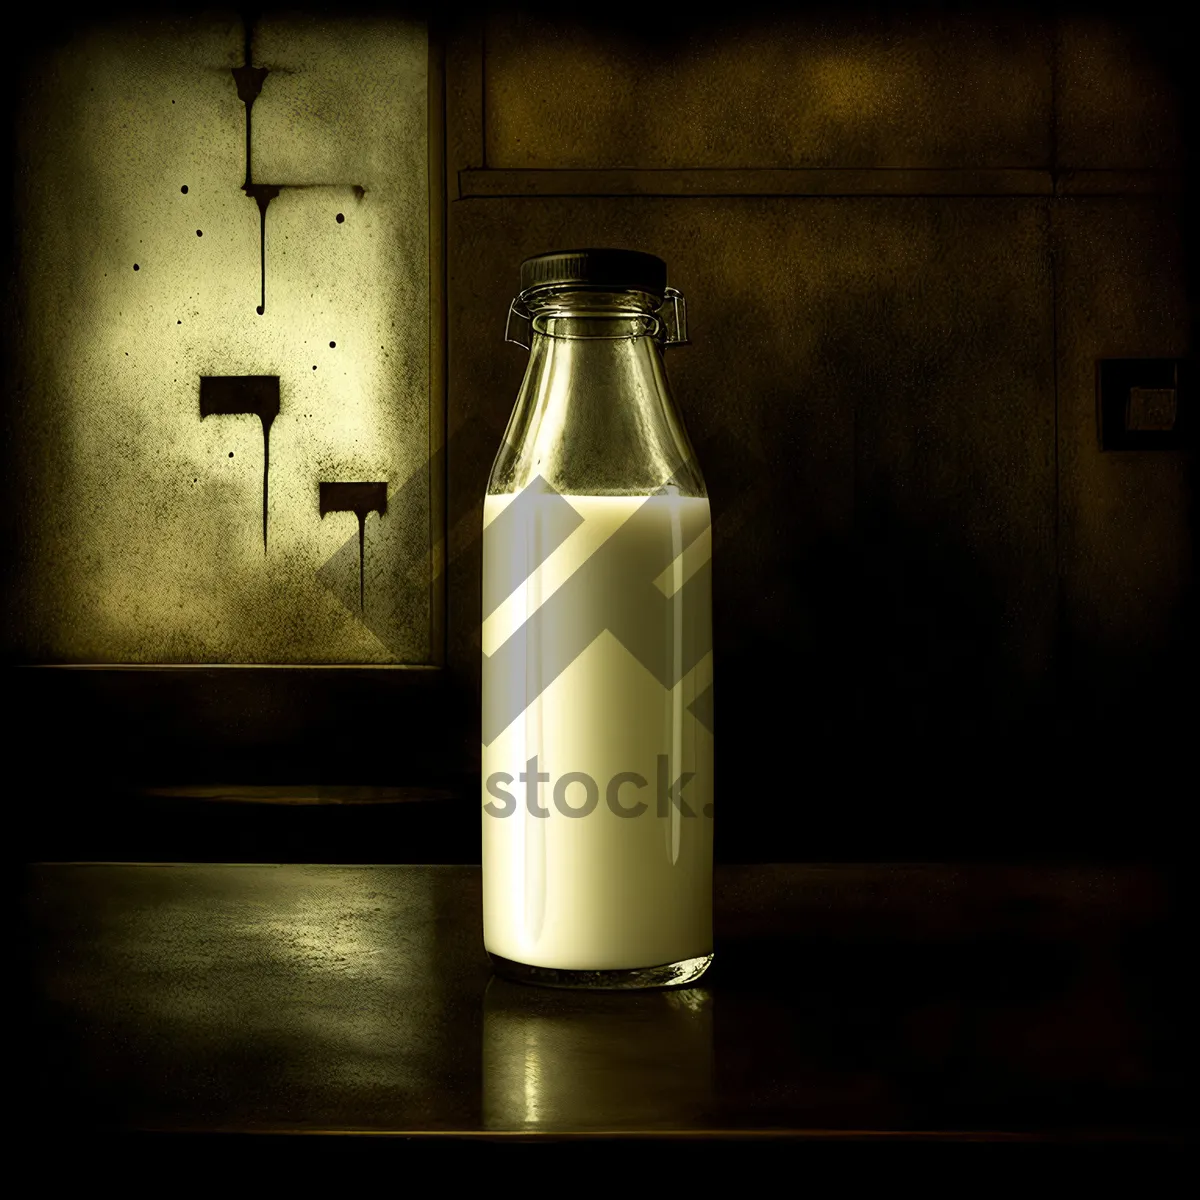 Picture of Glass Milk Bottle with Saltshaker Cap